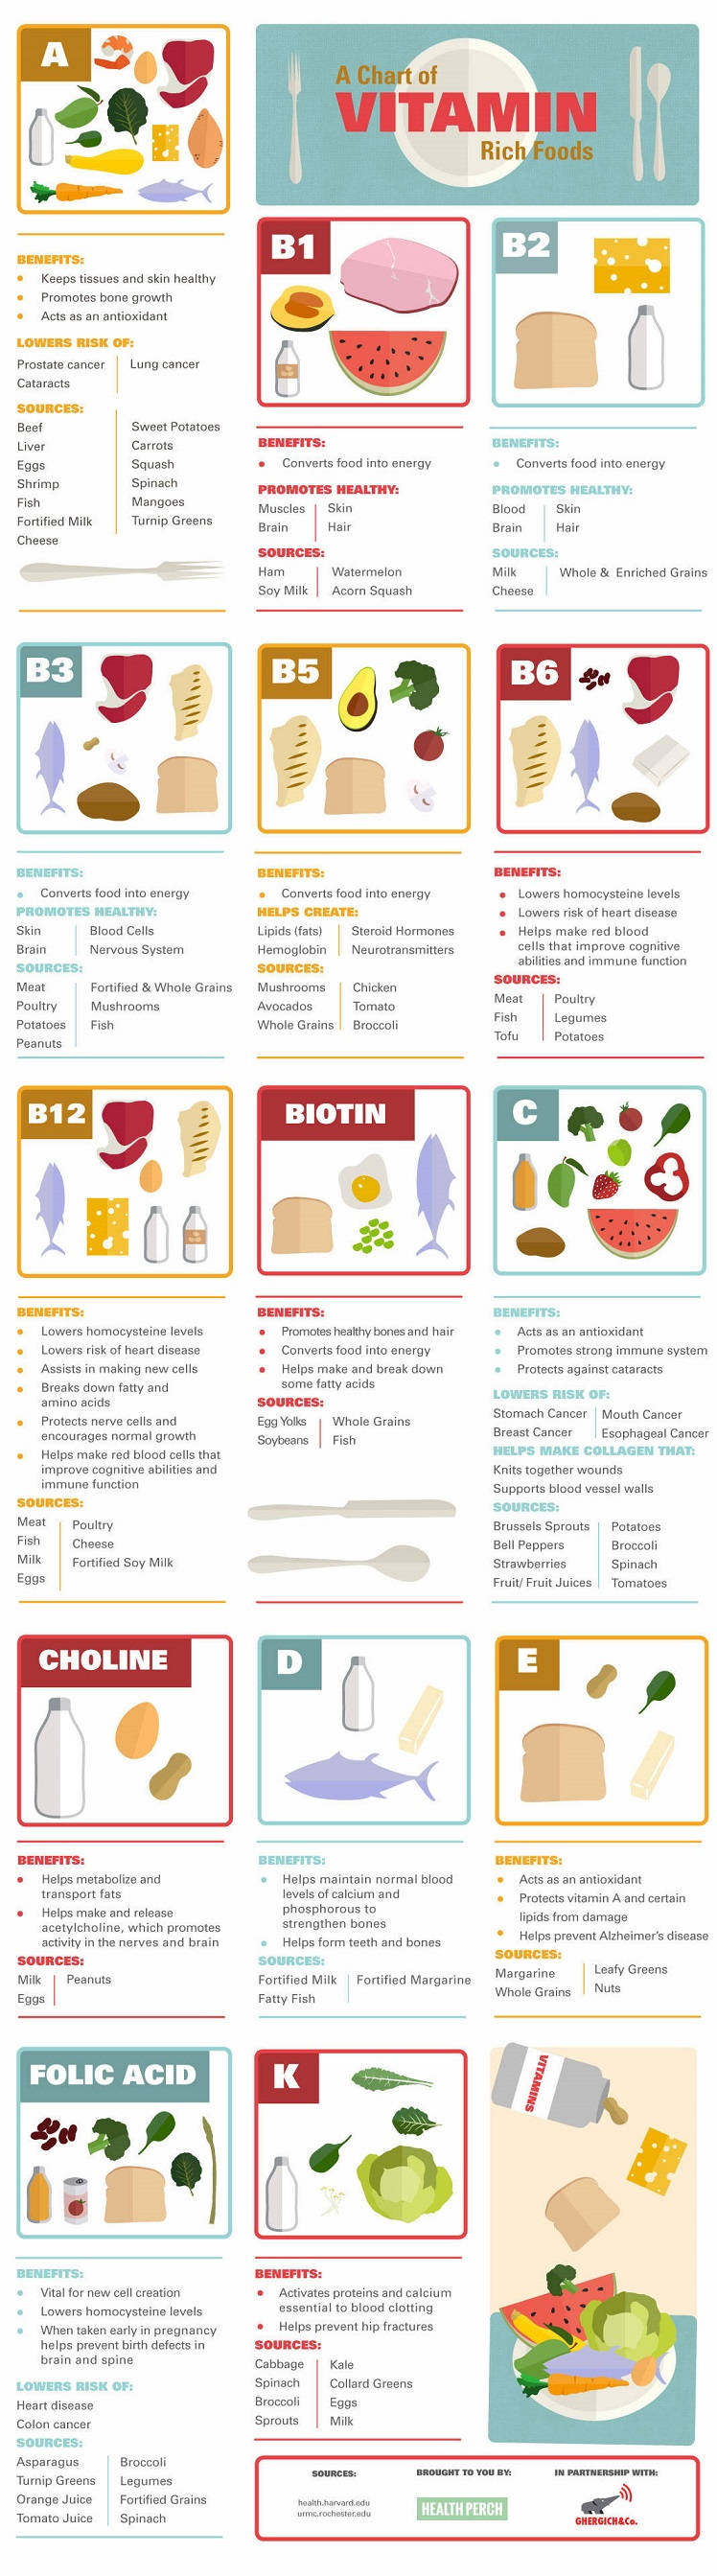 Understanding the Vitamins in Your Food